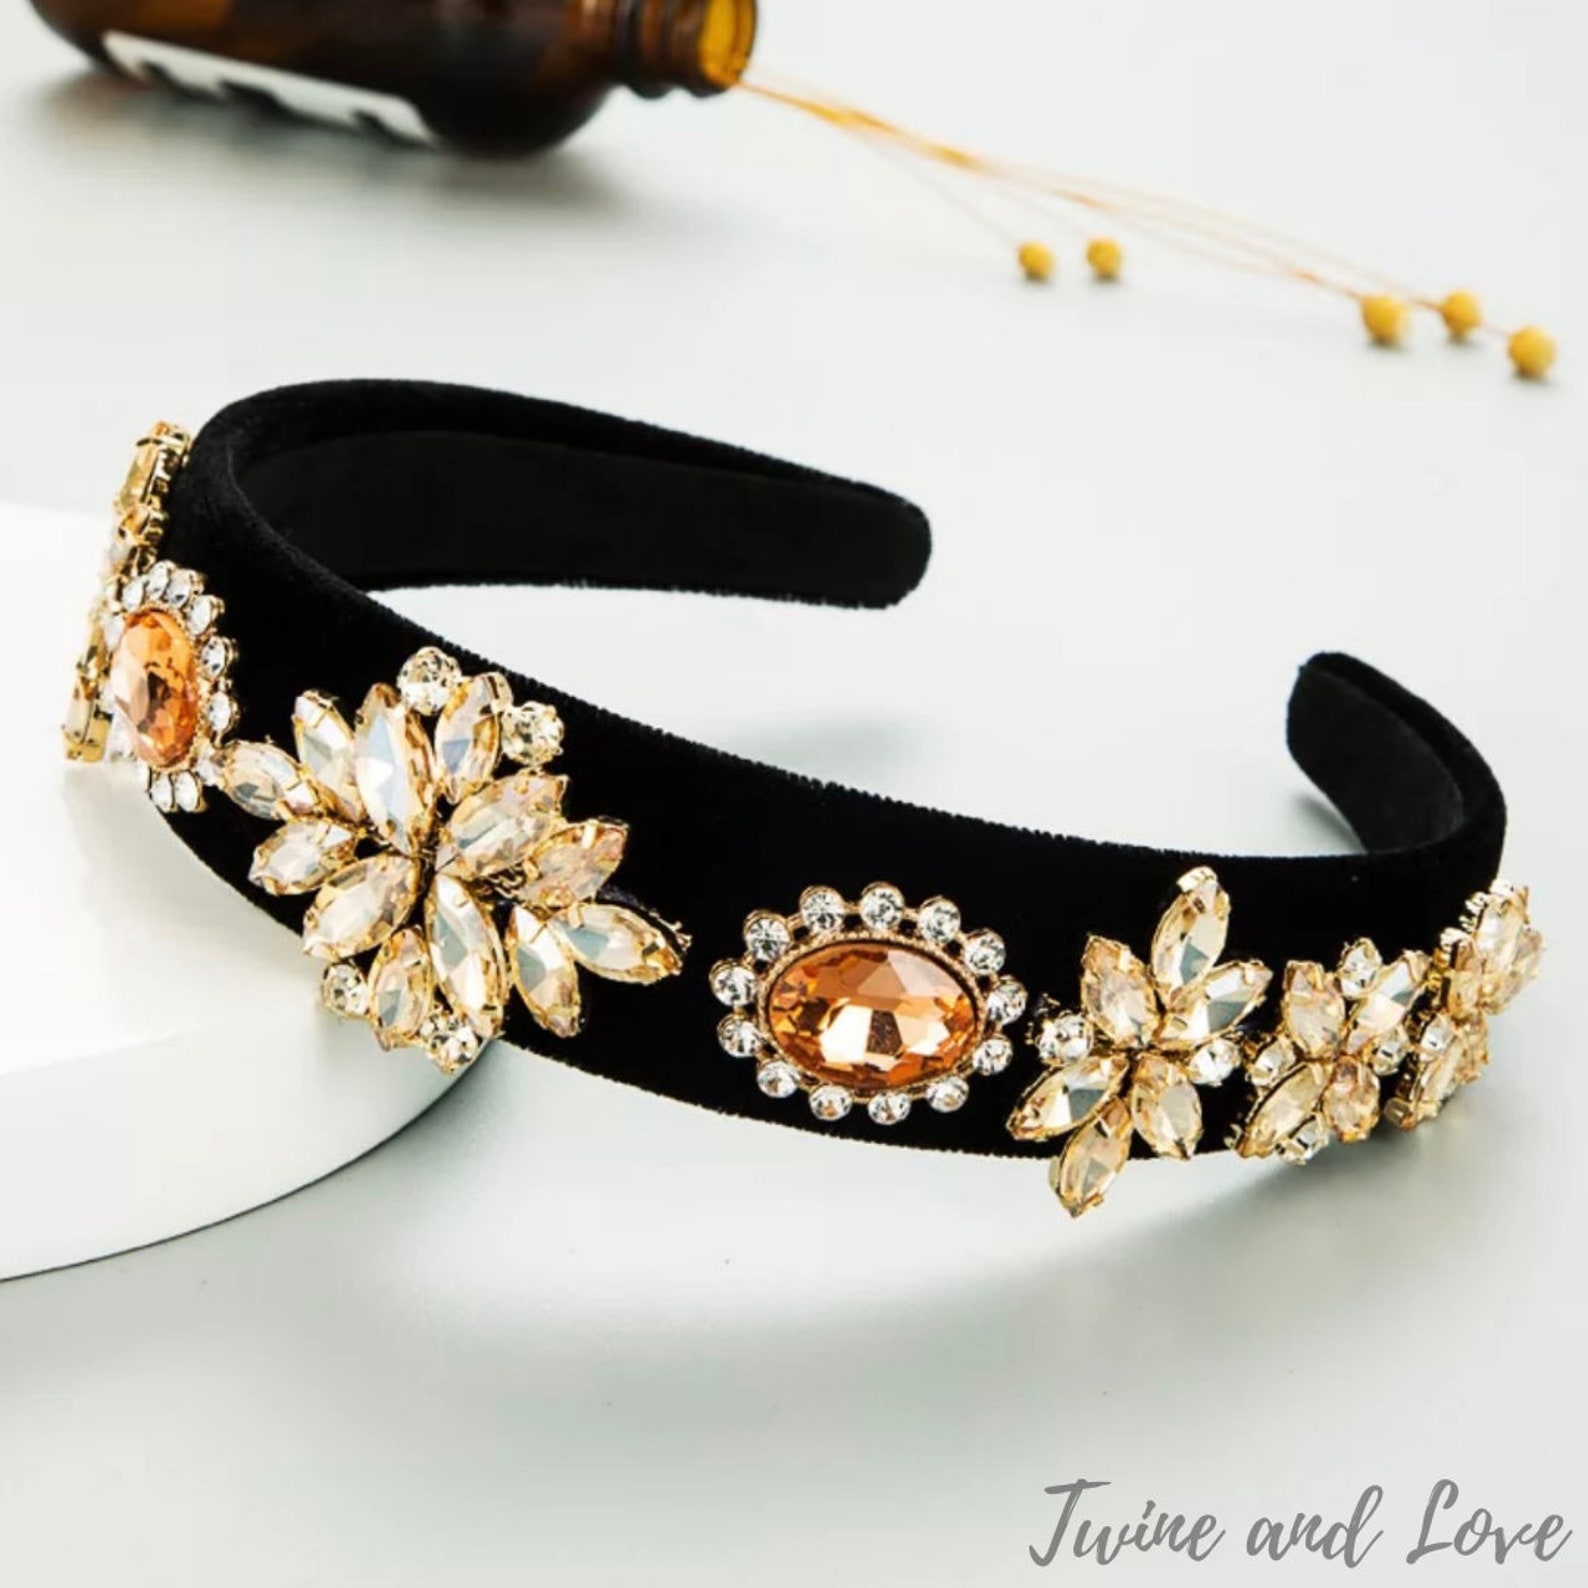 Jeweled headband Rhinestone headband for women Embellished | Etsy